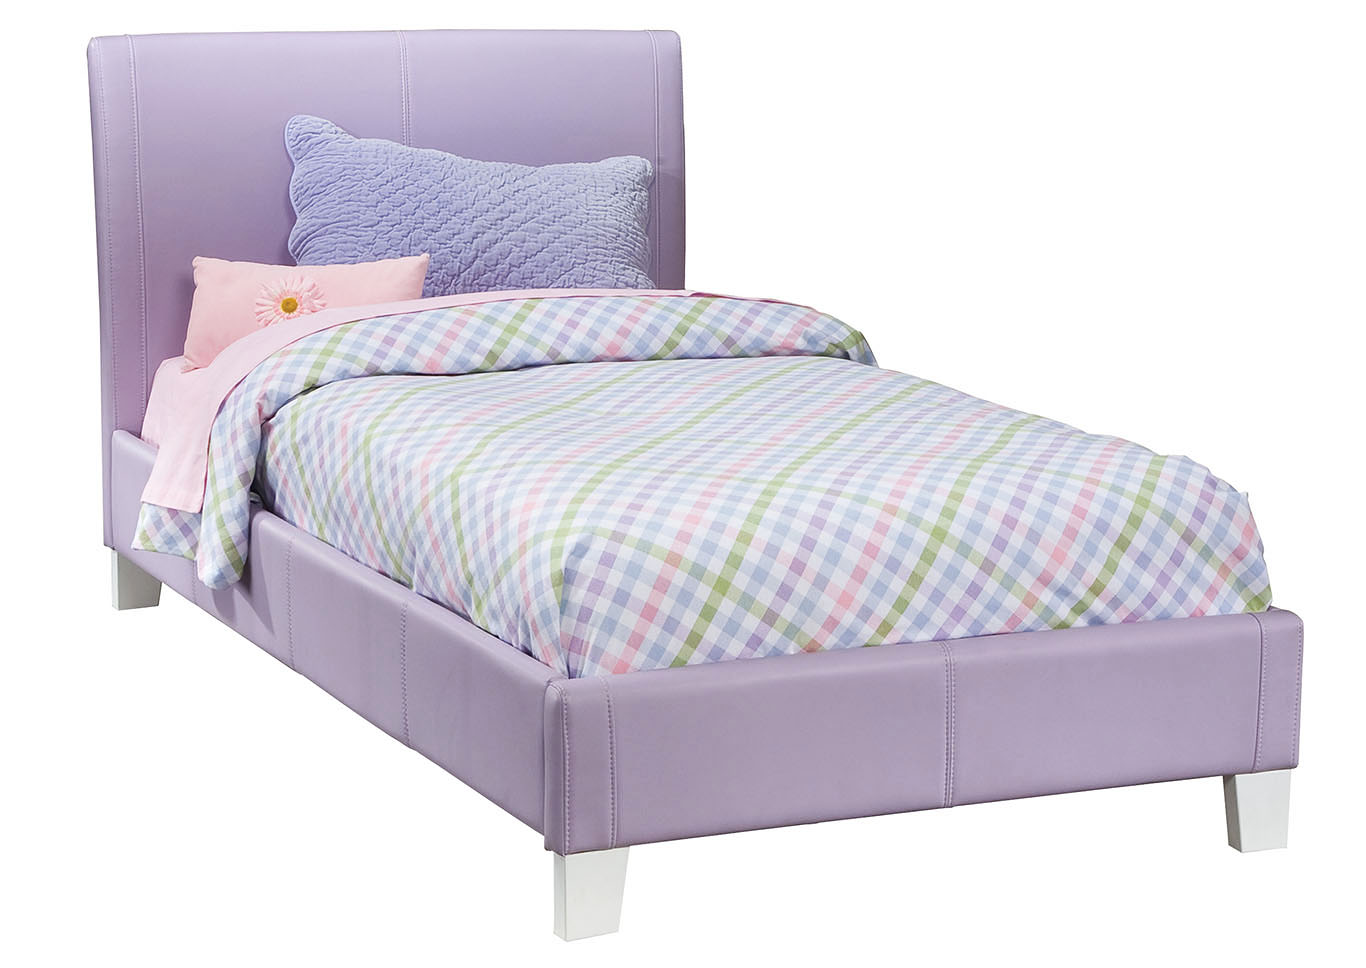 Fantasia Lavender Twin Upholstered Bed,Standard